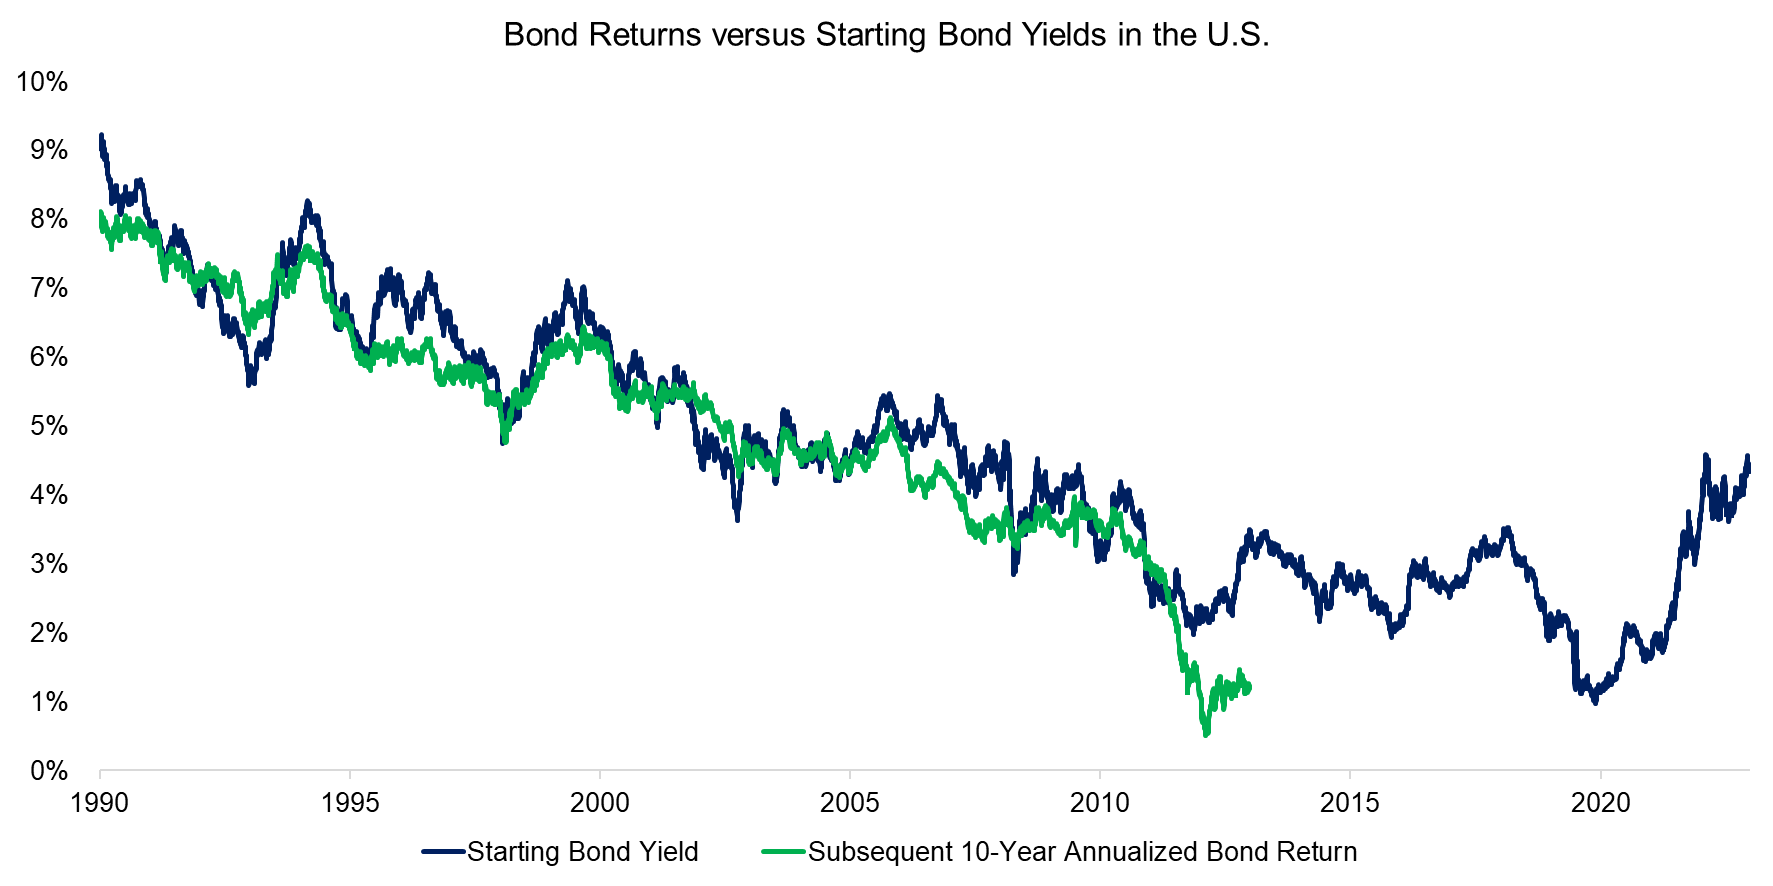 Bond Returns versus Starting Bond Yields in the U.S.